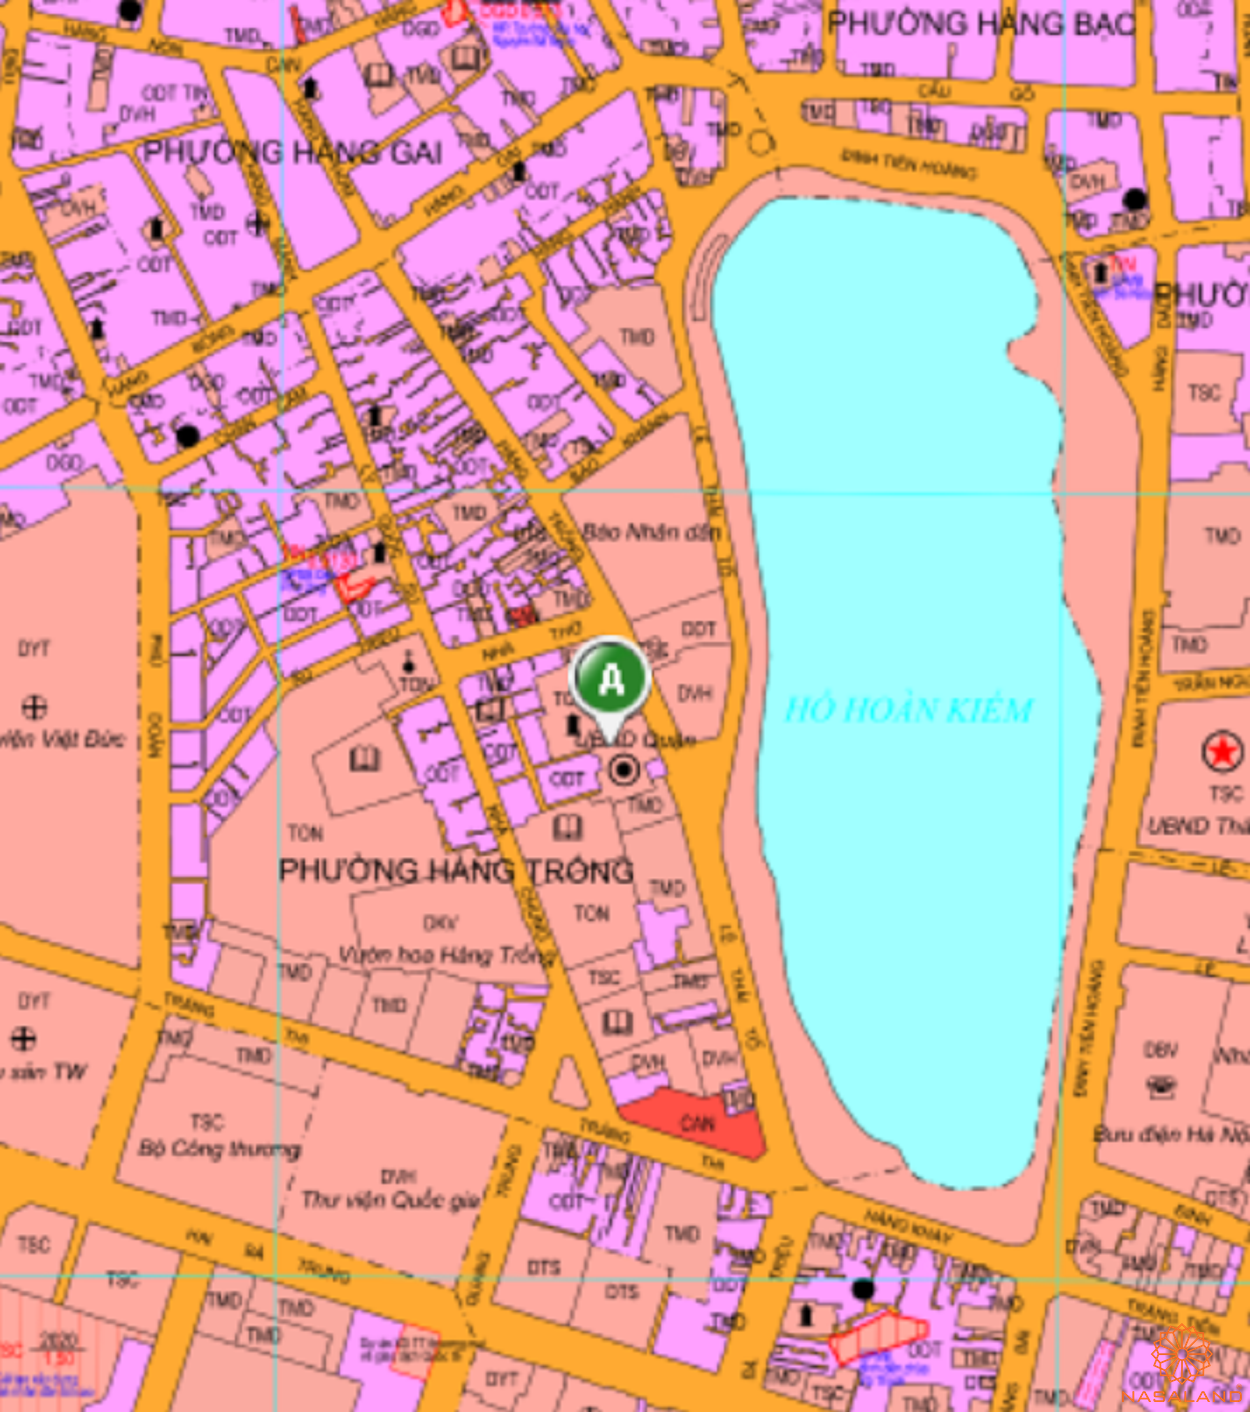 Bản đồ quy hoạch sử dụng đất Phường Hàng Trống theo bản đồ quy hoạch sử dụng đất năm 2020 Quận Hoàn Kiếm, Thành phố Hà Nội.